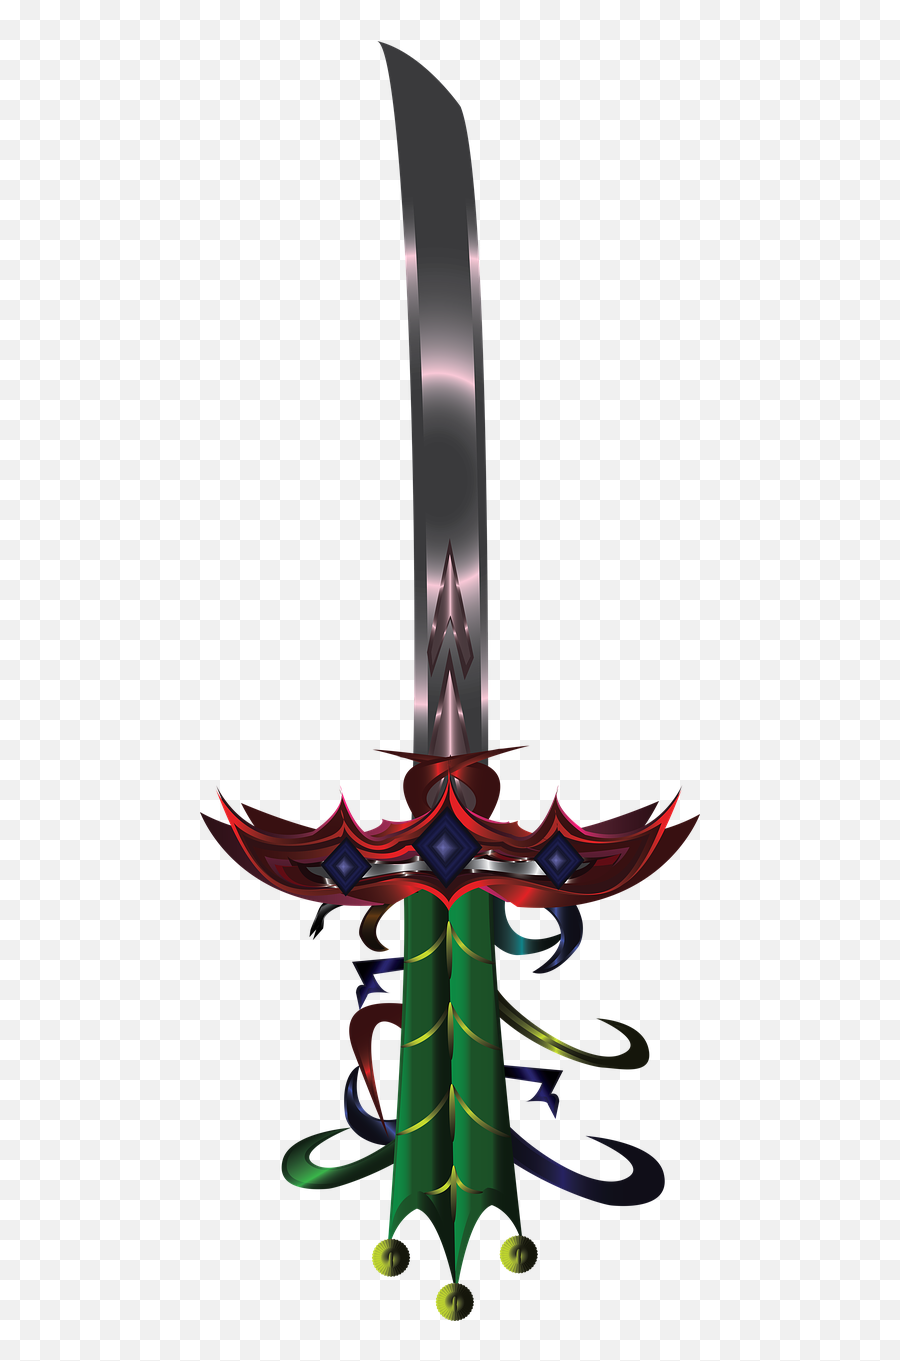 Free Photos Katana Search Download - Needpixcom Collectible Sword Png,Samurai Sword Png